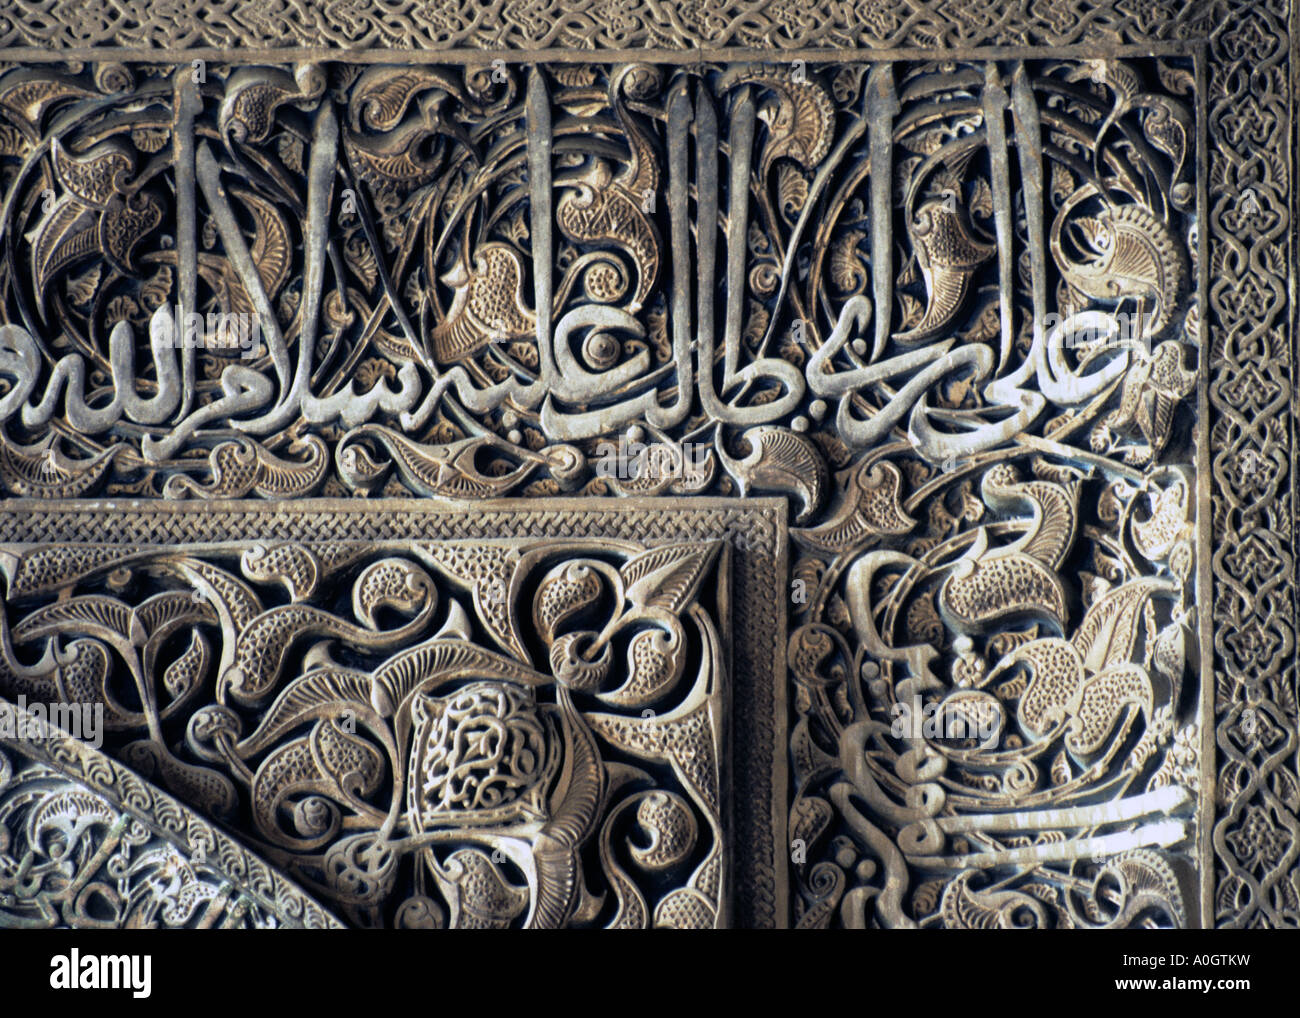 Détail de mihrab, mosquée de vendredi d'Isfahan, Iran Banque D'Images